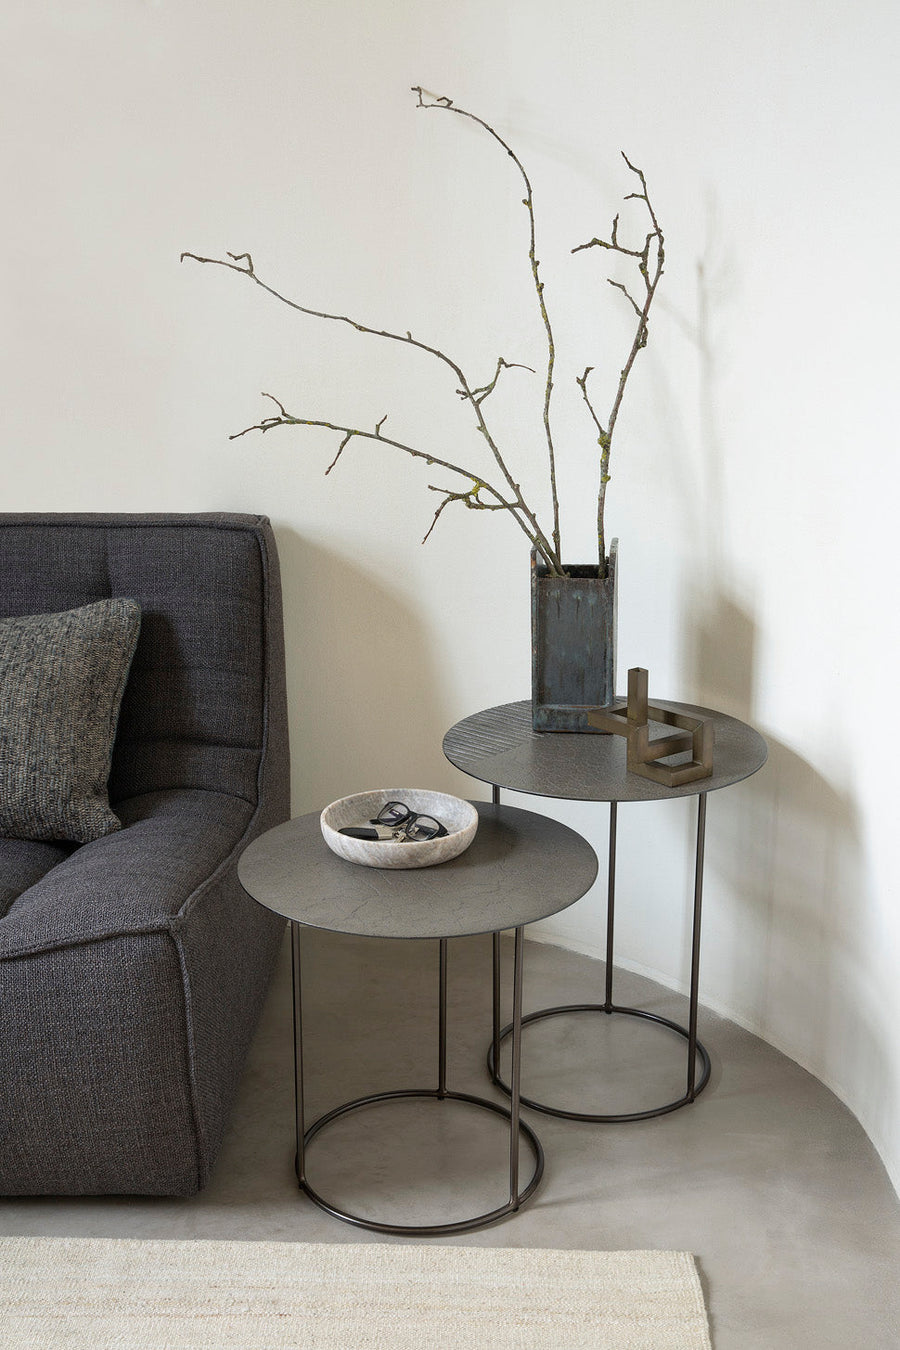 SOBU Oakland | Shop Designed and Handpicked Furniture